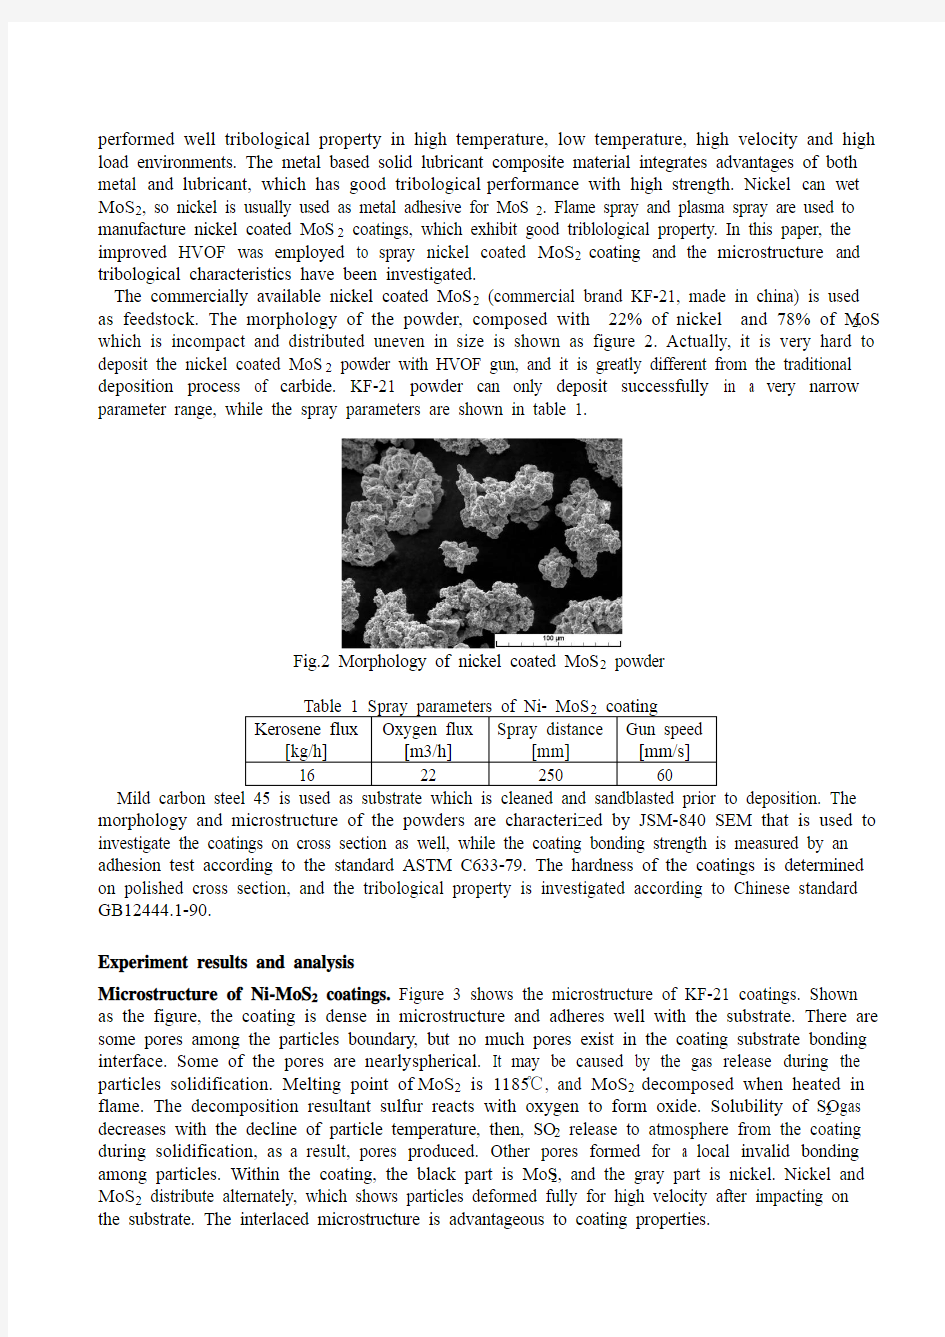 (04) Study on HVOF sprayed nickel coated MoS2 coatings